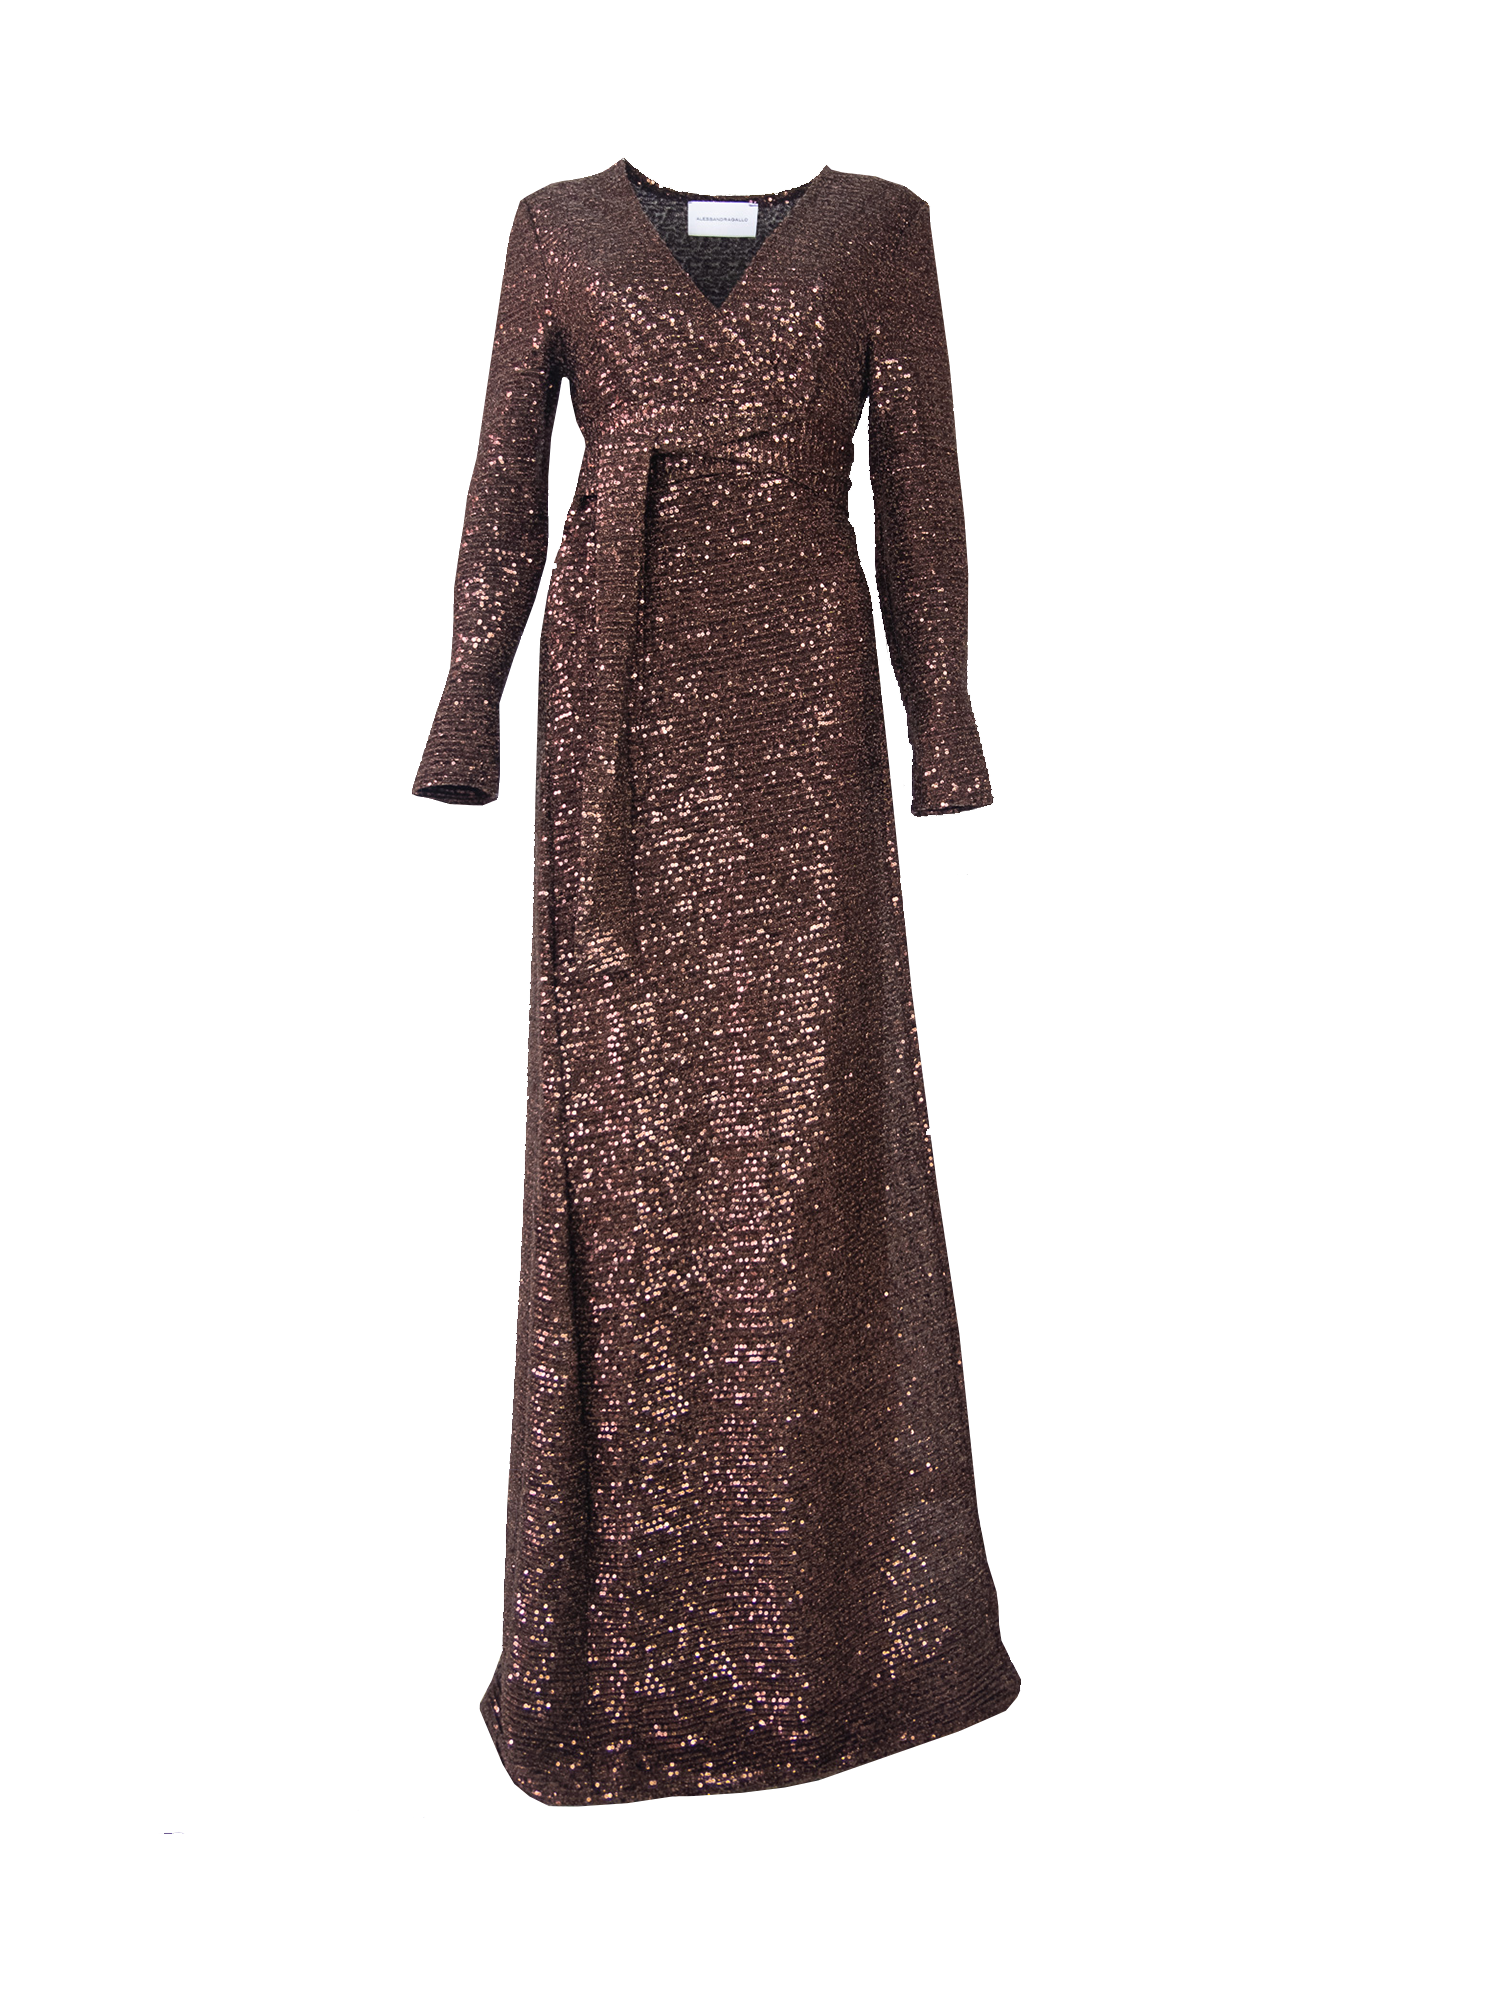 LETIZIA - long brown sequin dress